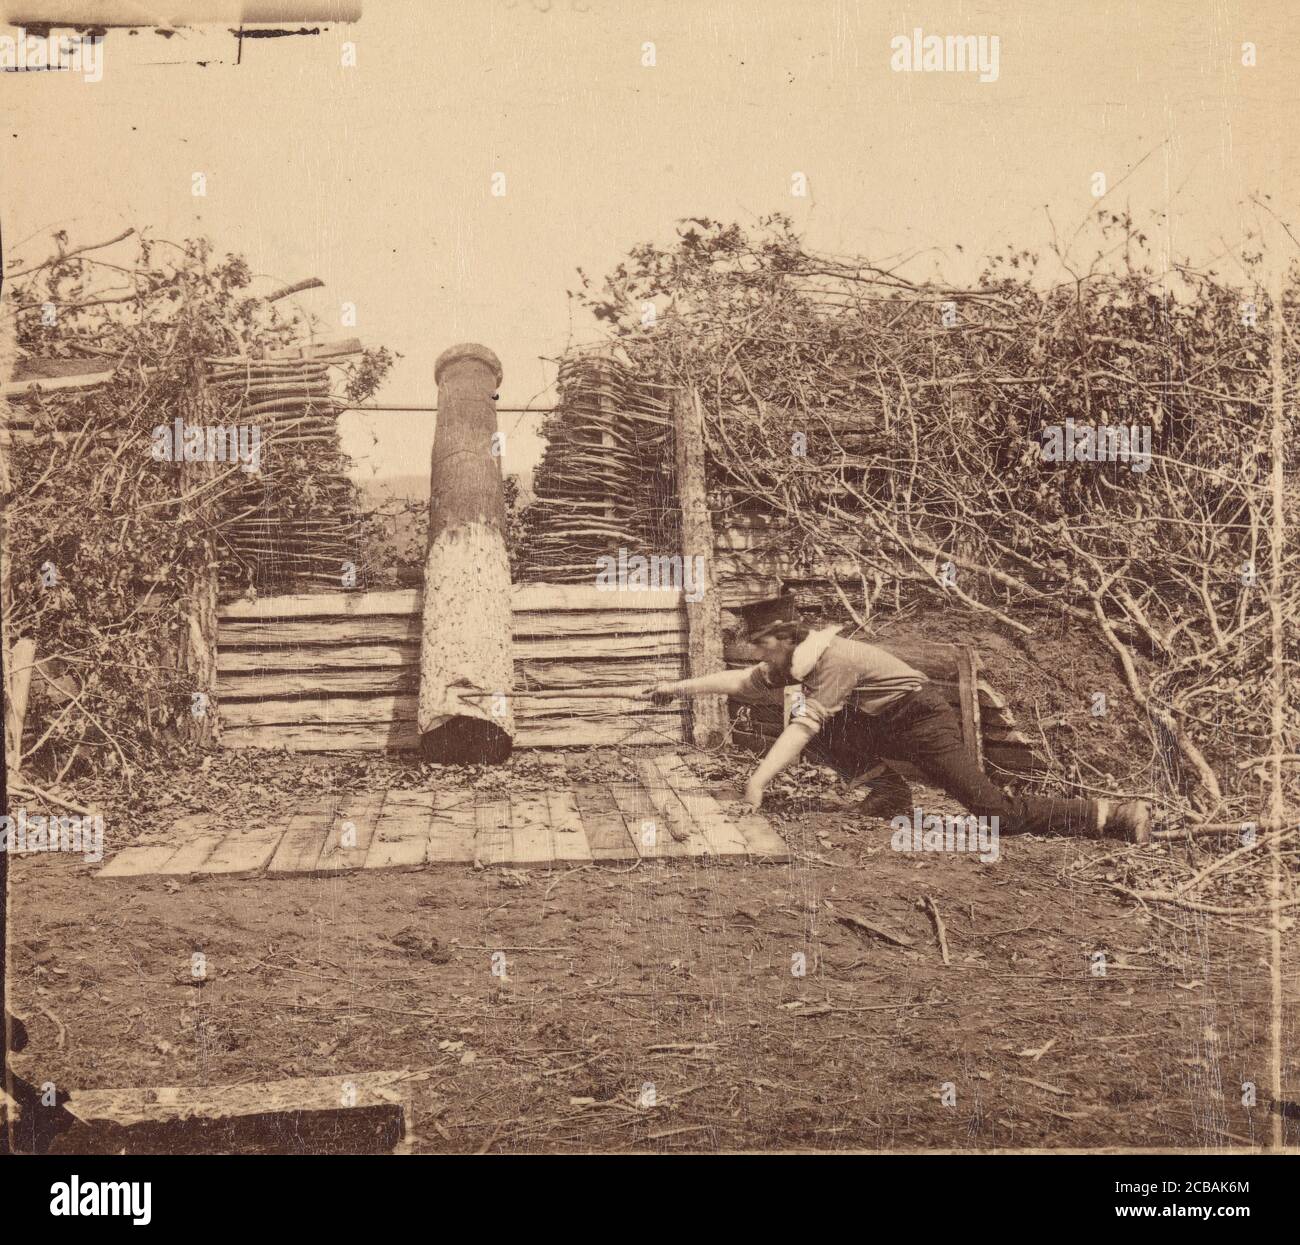 Quaker Gun, Centreville, Virginia, March 1862. Stock Photo